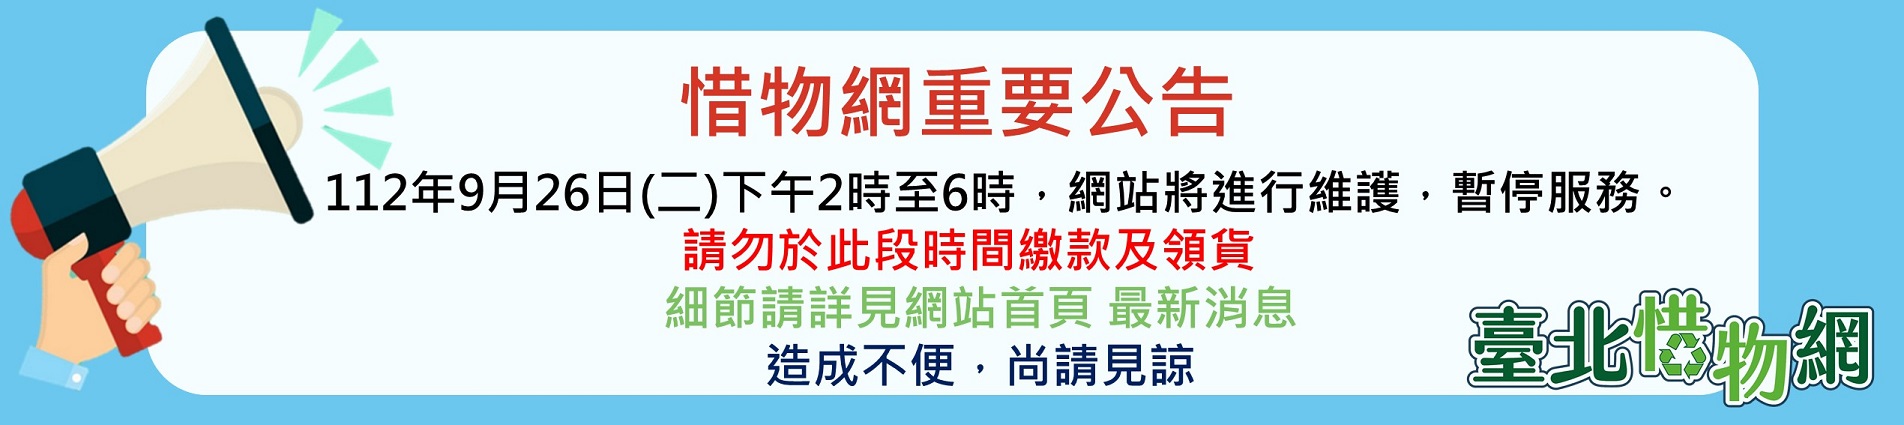 「臺北惜物網」112年9月26日(二)下午2時至6時系統維護停機公告